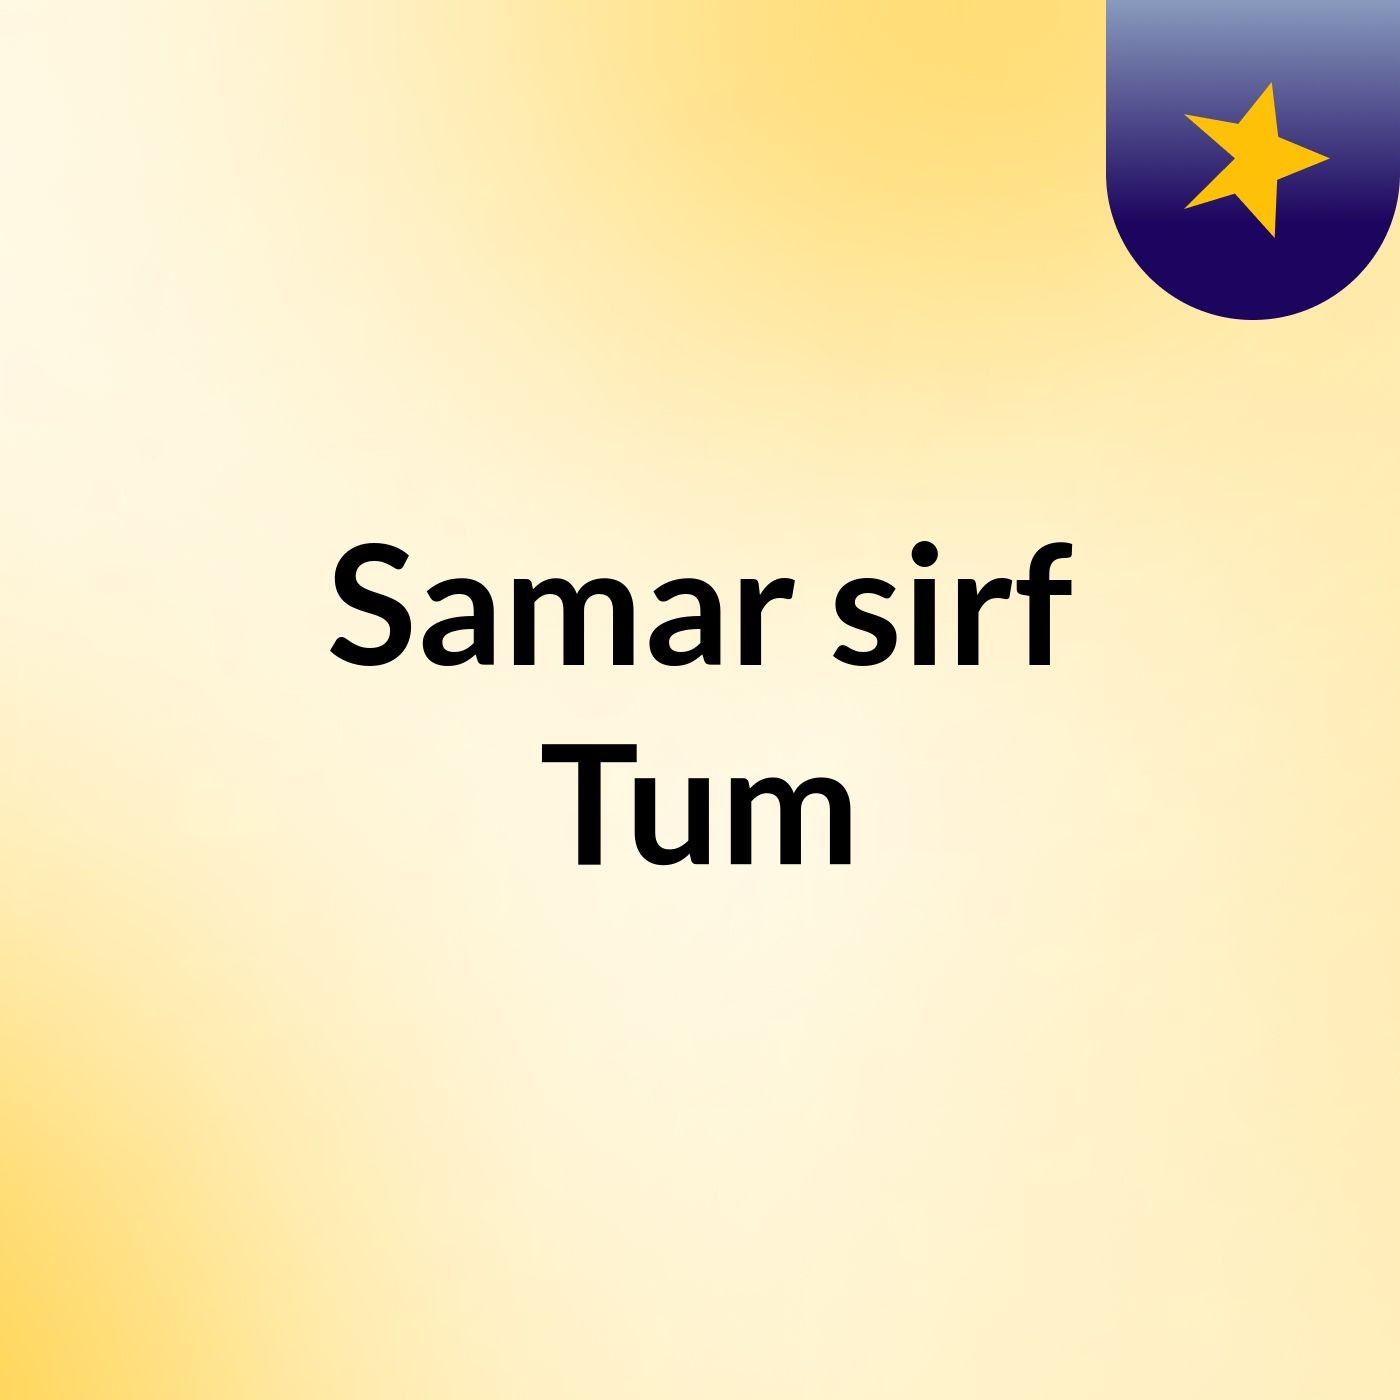 Episode 47 - Samar sirf Tum